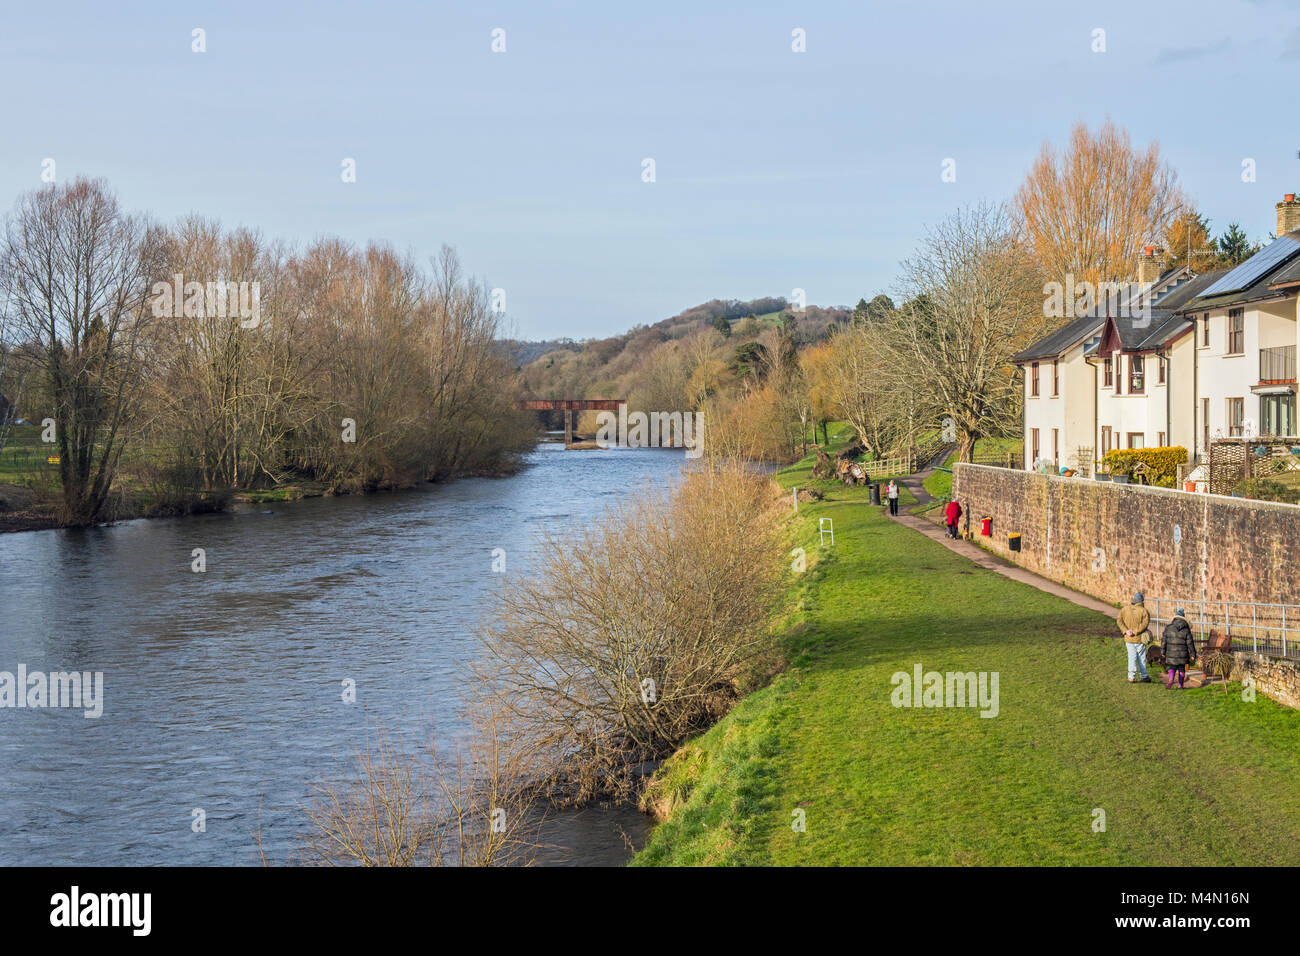 La rivière Usk qui longe la ville de Usk dans Monmouthshire Galles du Sud Banque D'Images